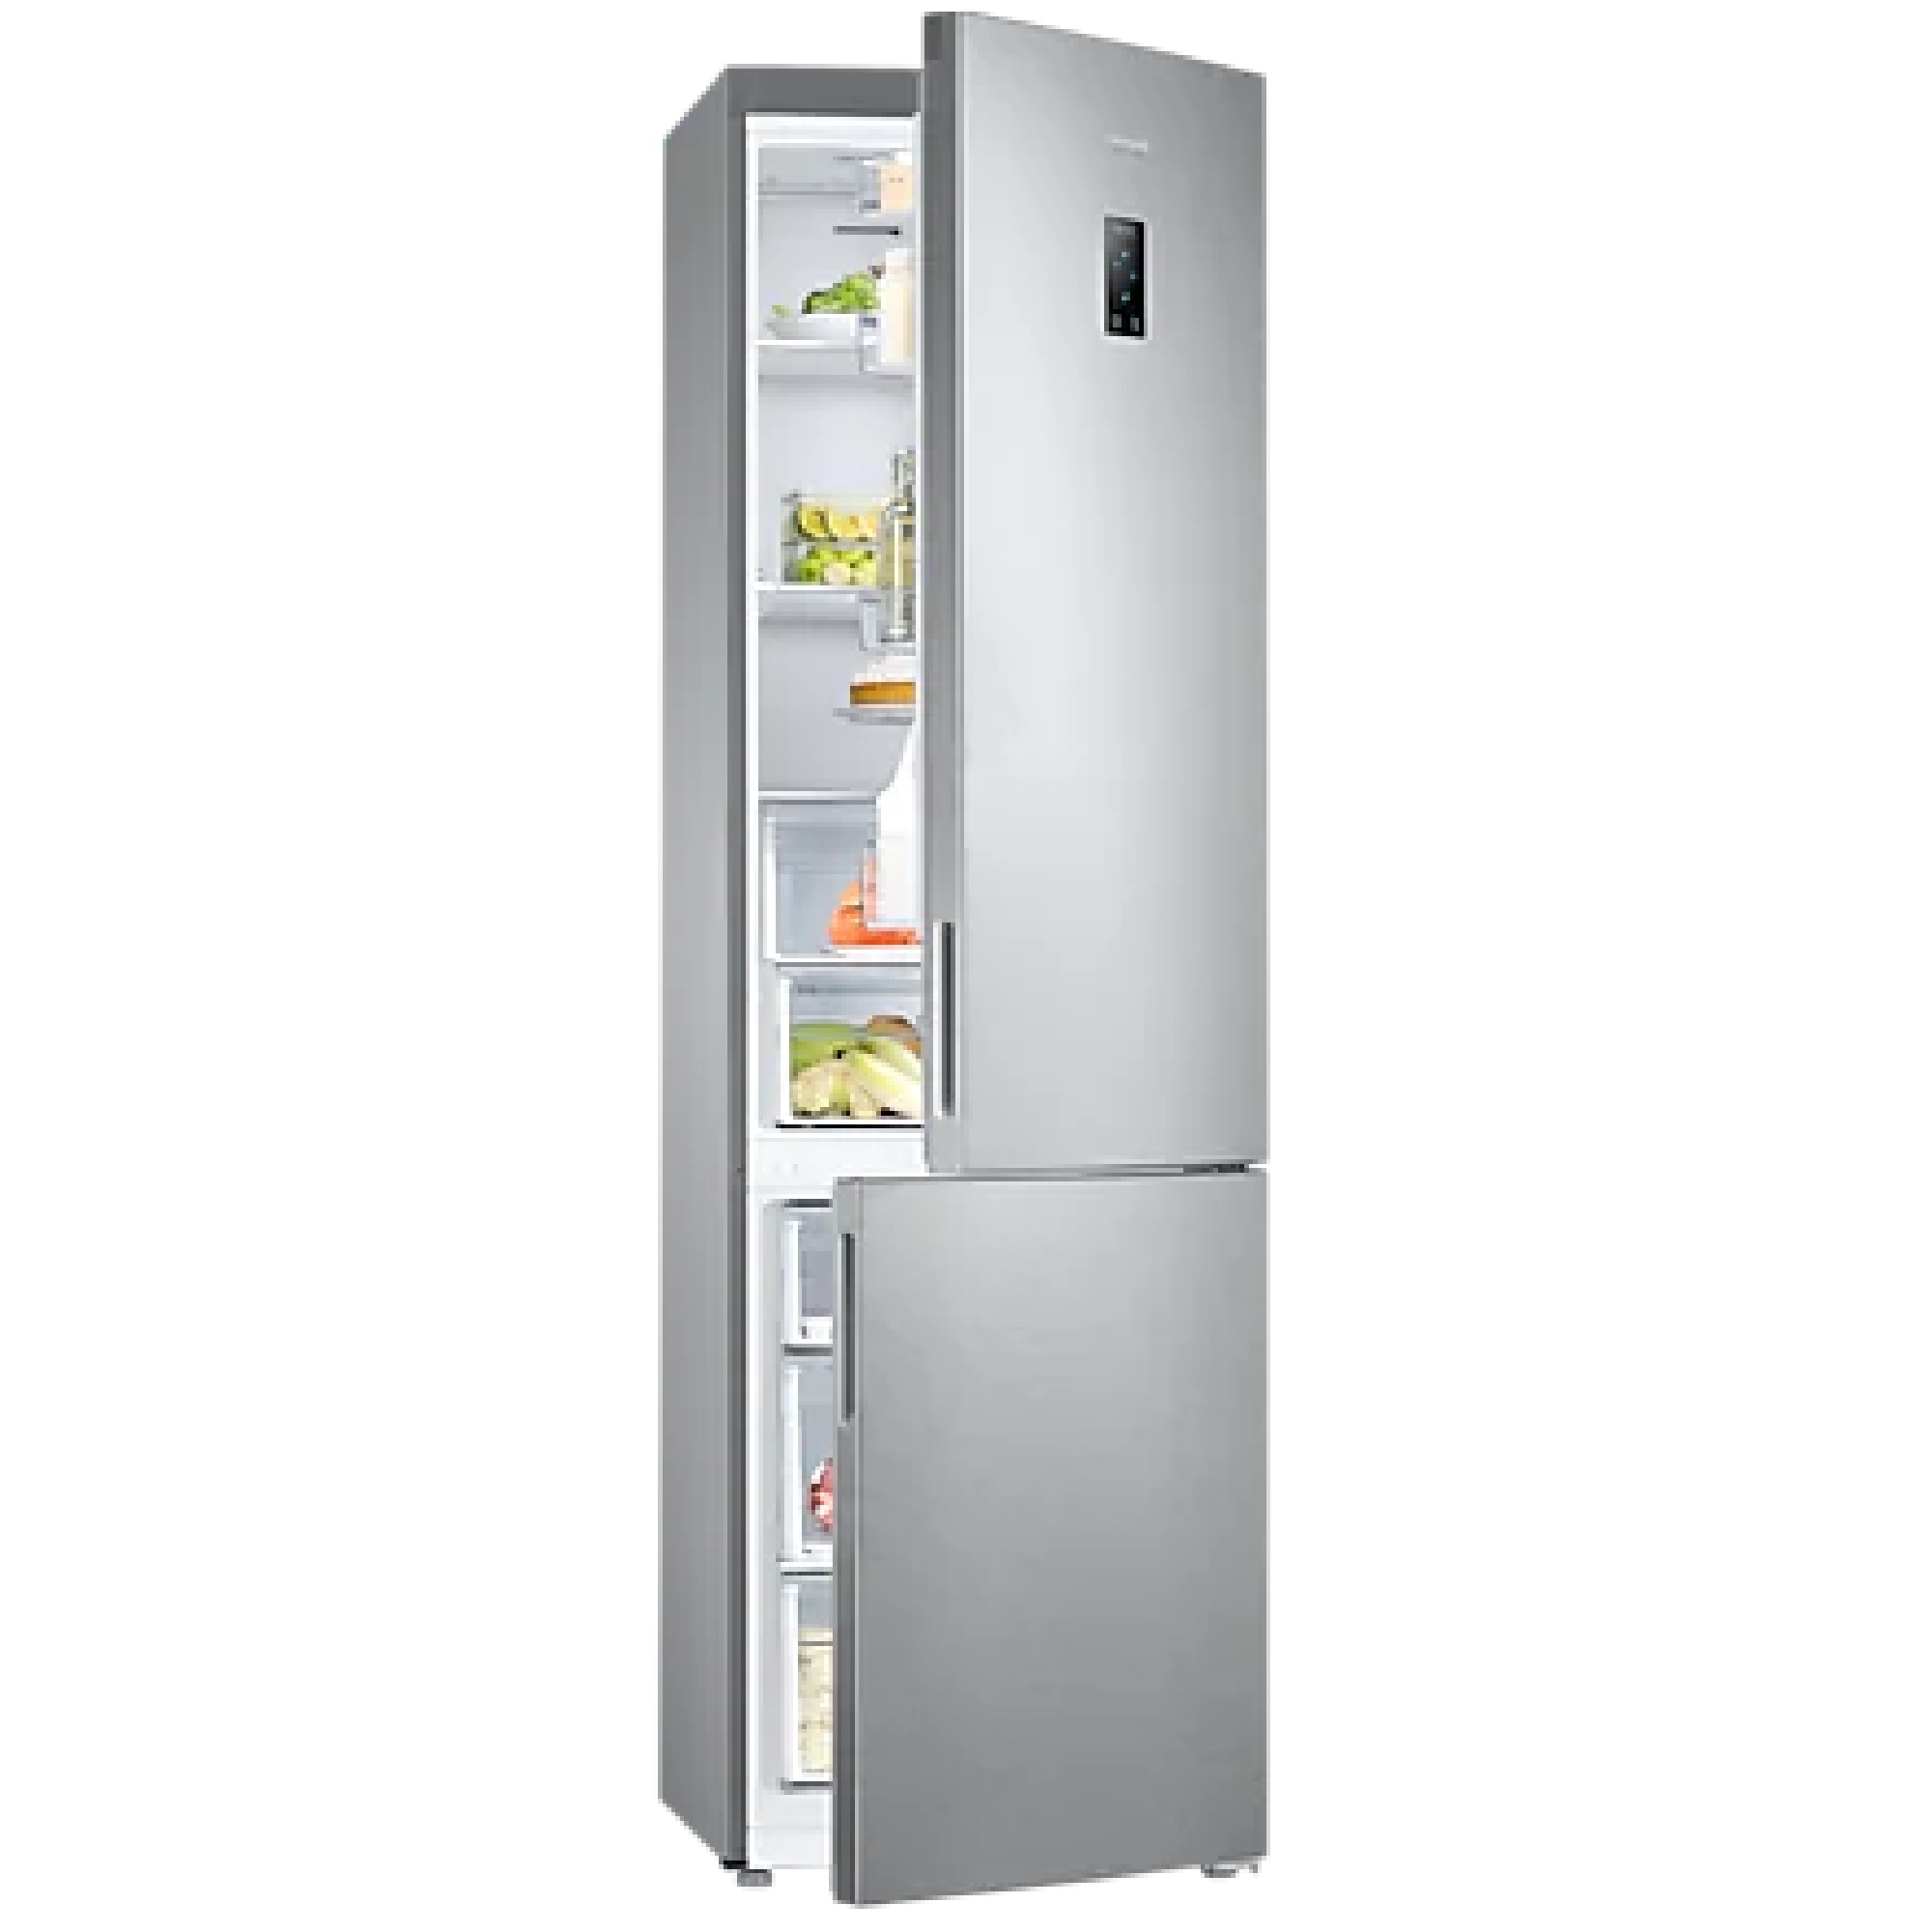 Rb30a32n0ww. Samsung rb37a5200sa. Холодильник Samsung rb37a5200sa/WT. Холодильник Samsung rb37a5200sa серебристый. Samsung RB-37 j5240sa.